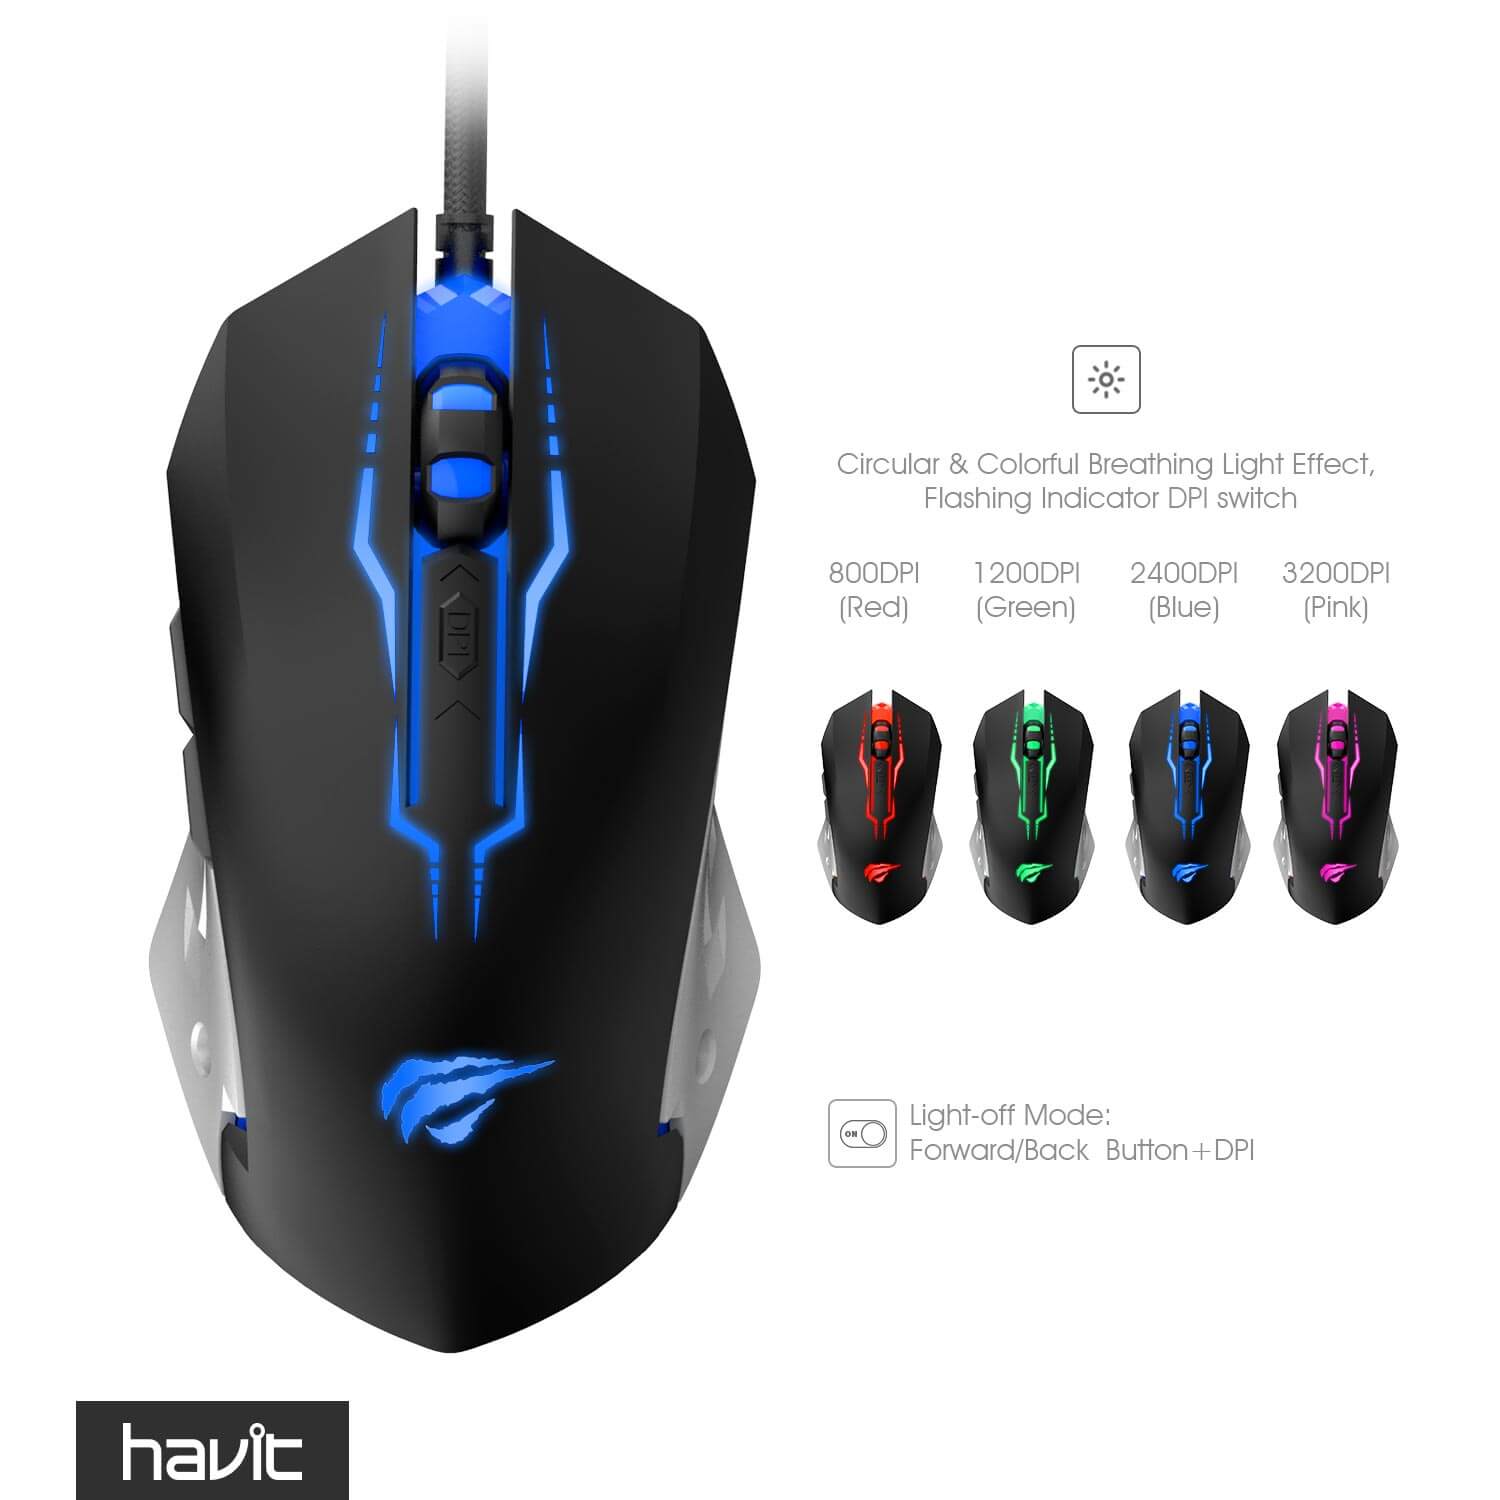 HAVIT X11 Gaming Keyboard Mouse Combo with Aluminum Panel & LED Backlit